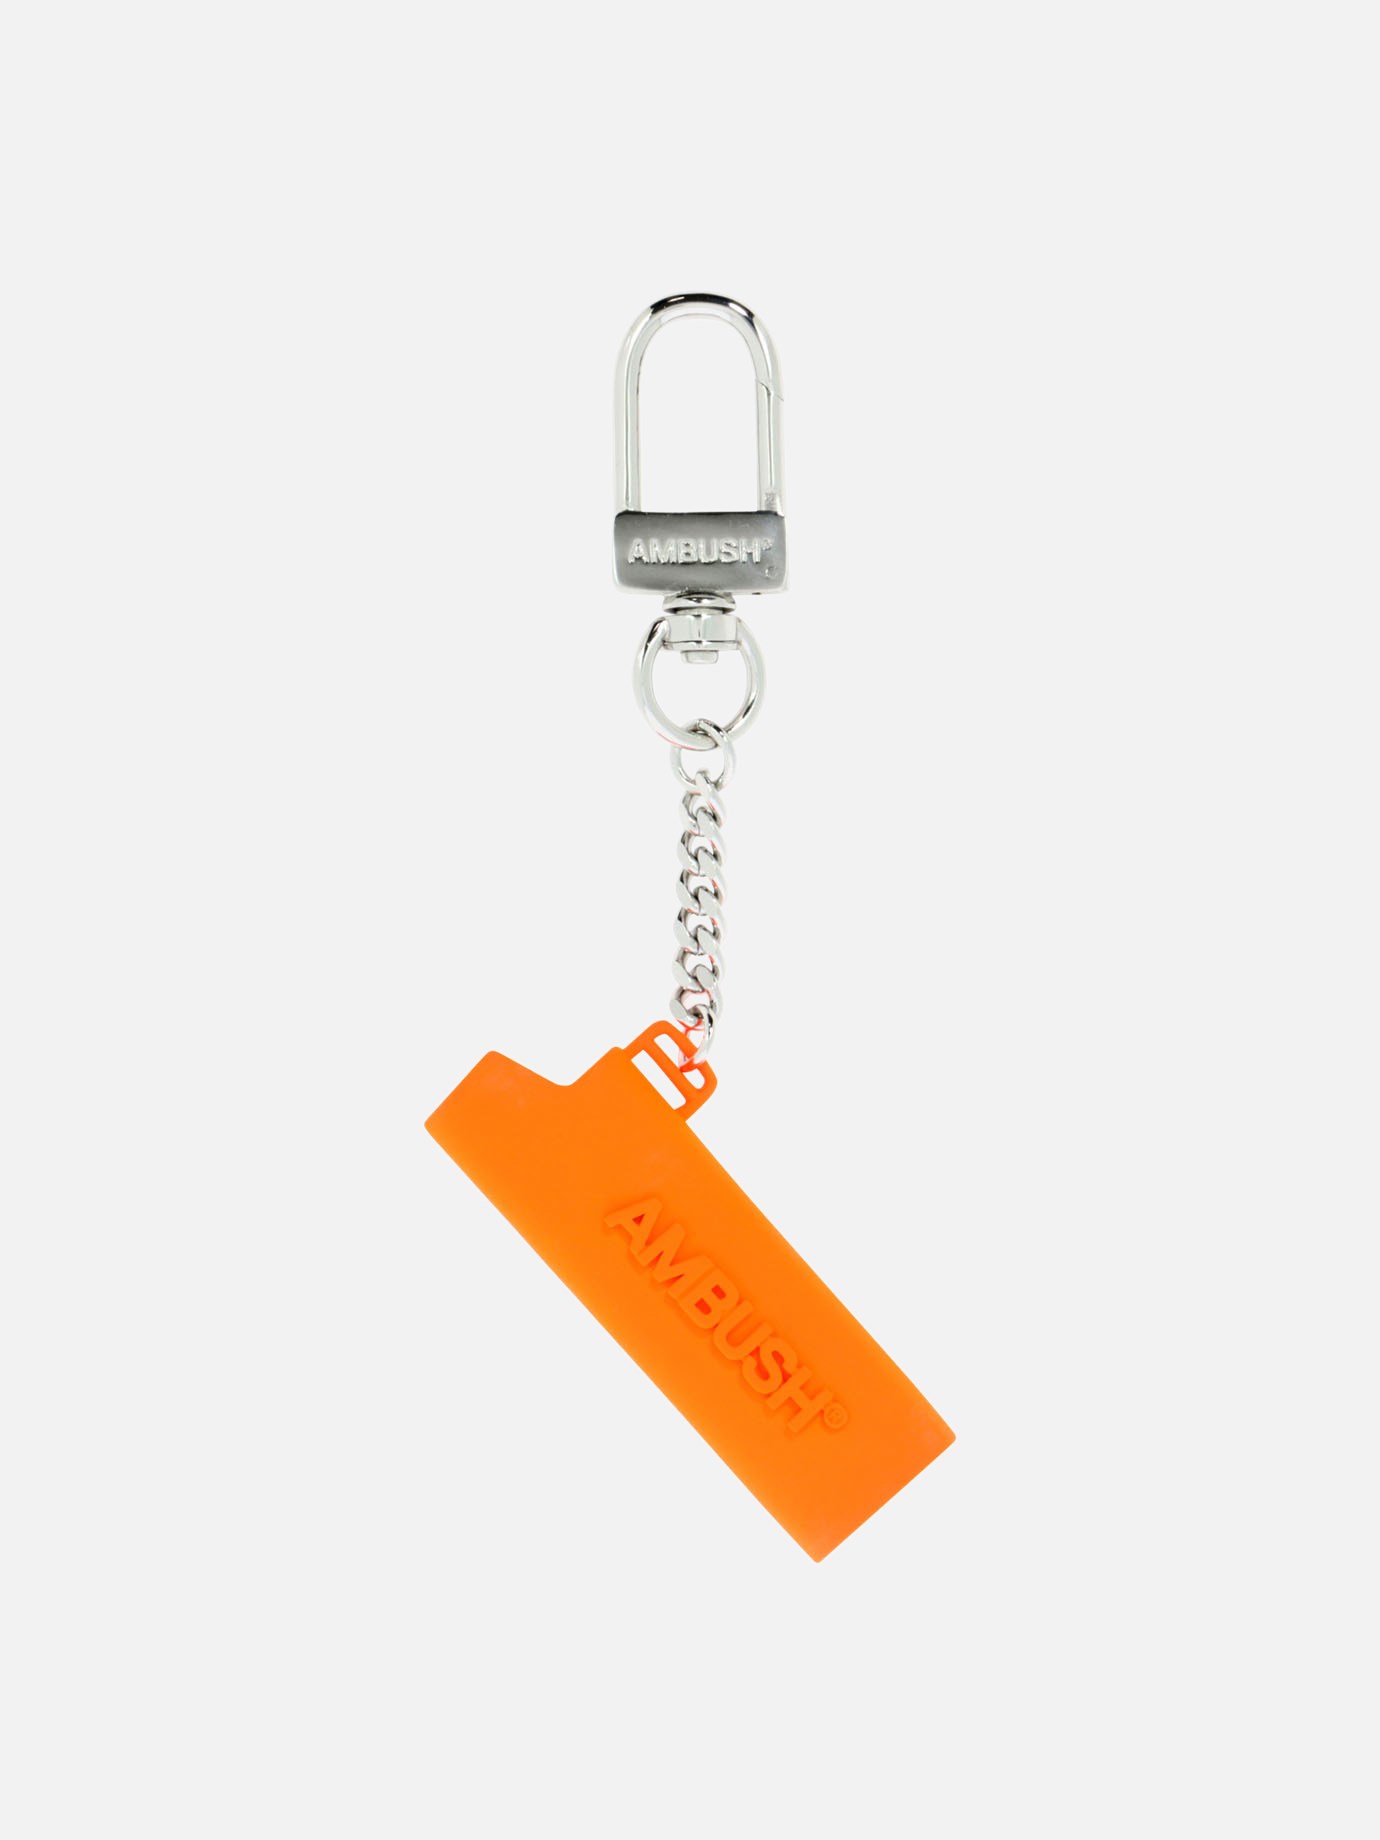 Lighter case keychain